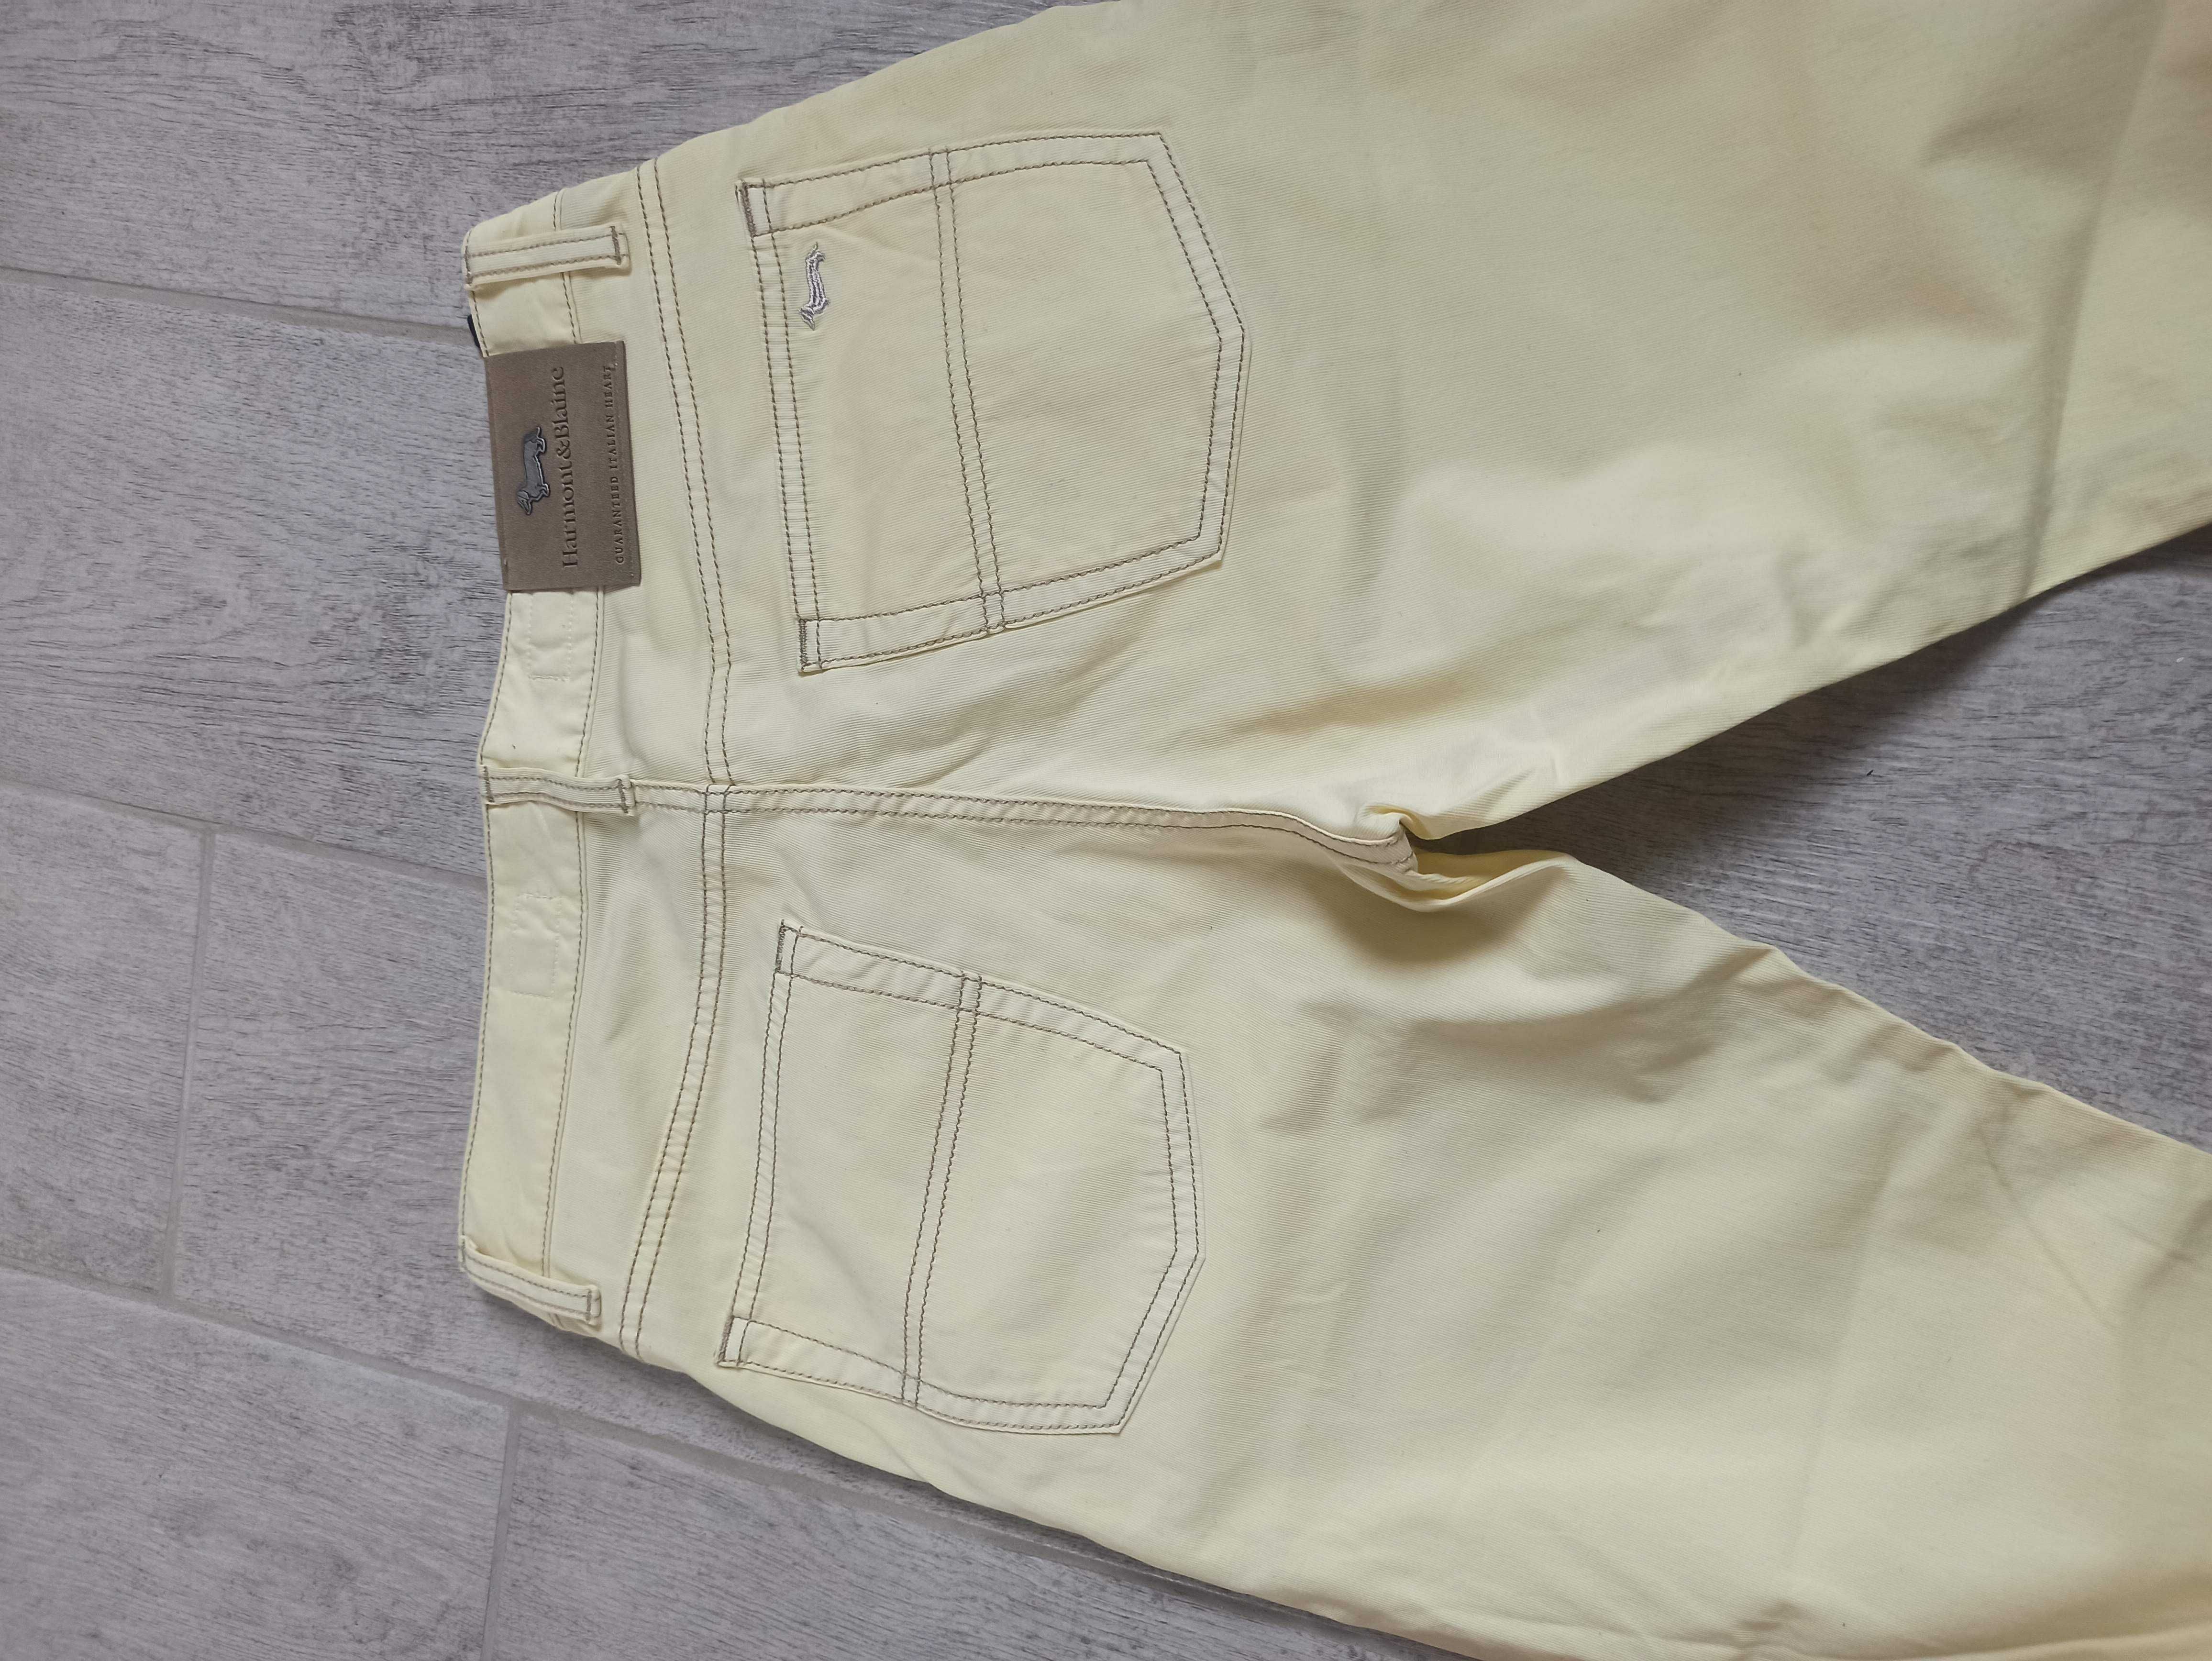 Італійські легкі брюки джинсового кроя, джинси harmont& blaine